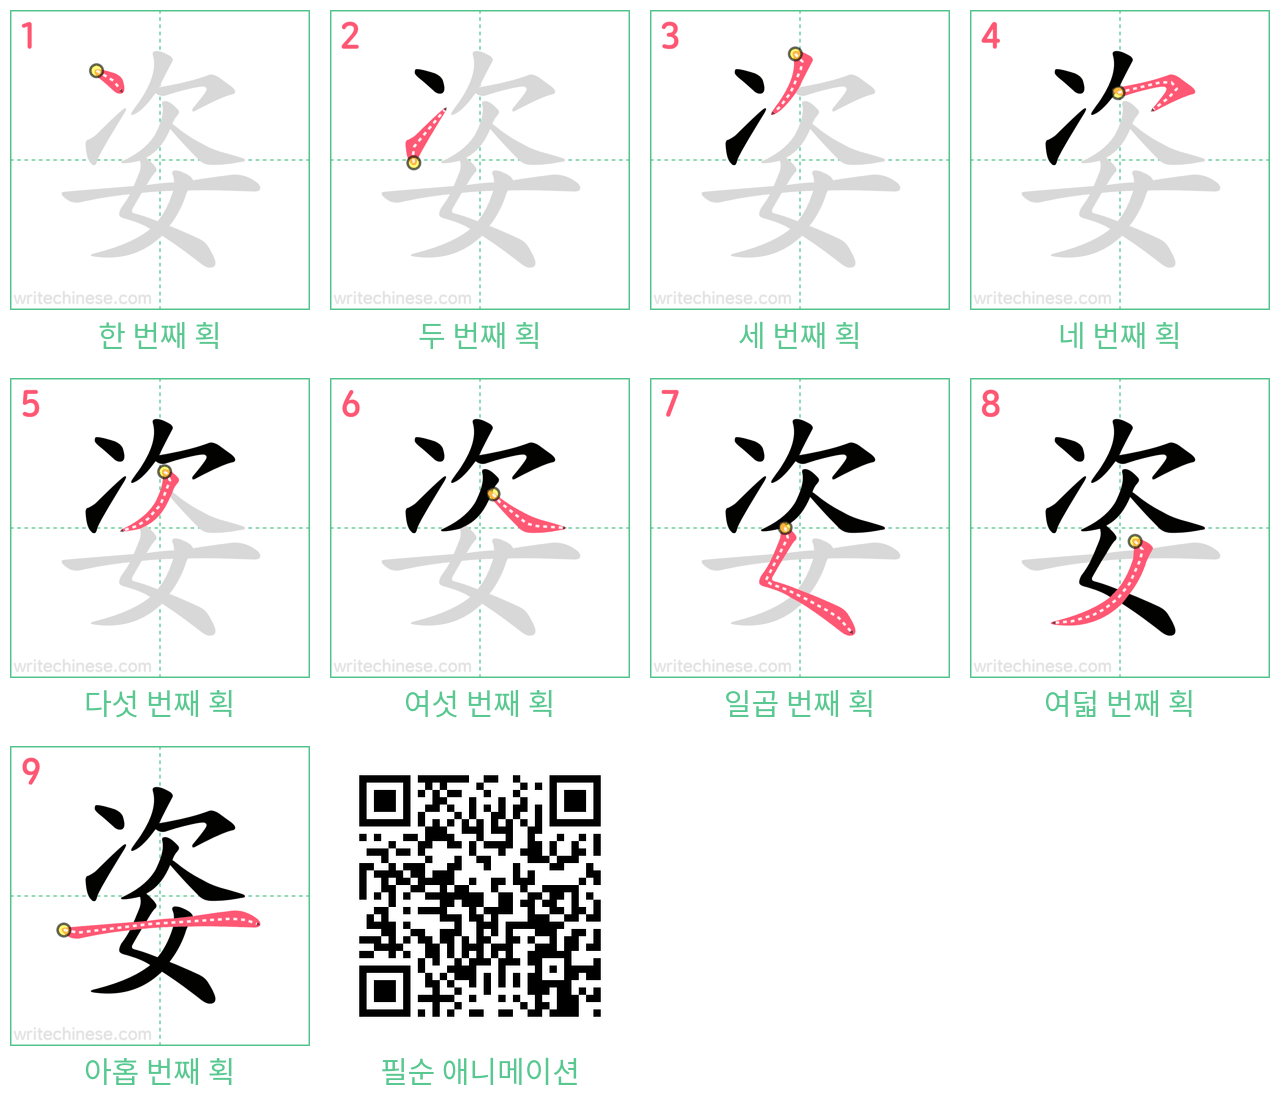 姿 step-by-step stroke order diagrams